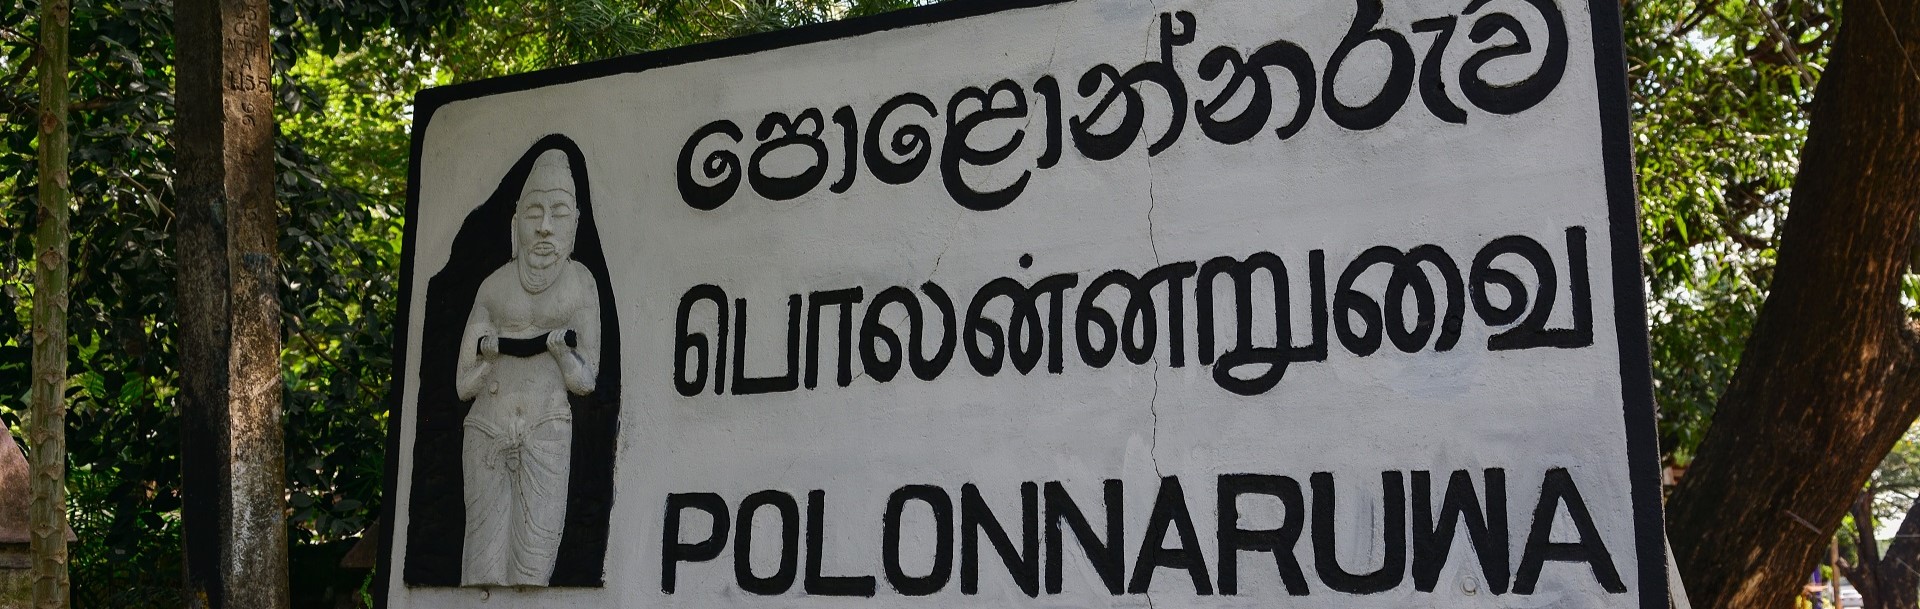 Polonnaruwa  